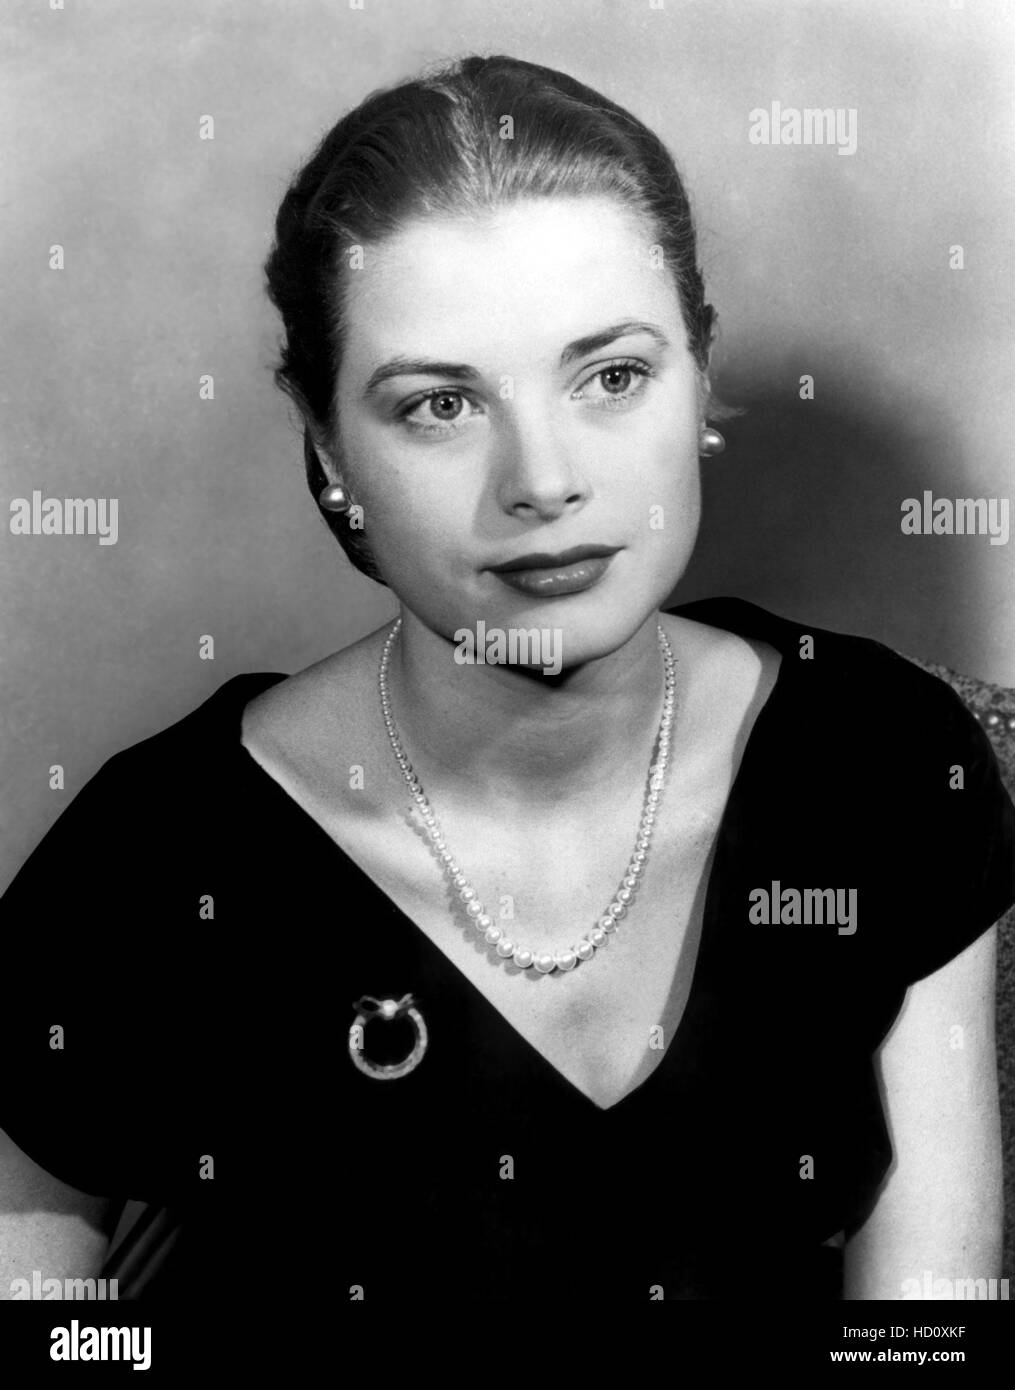 Grace Kelly, 1952 Stock Photo - Alamy